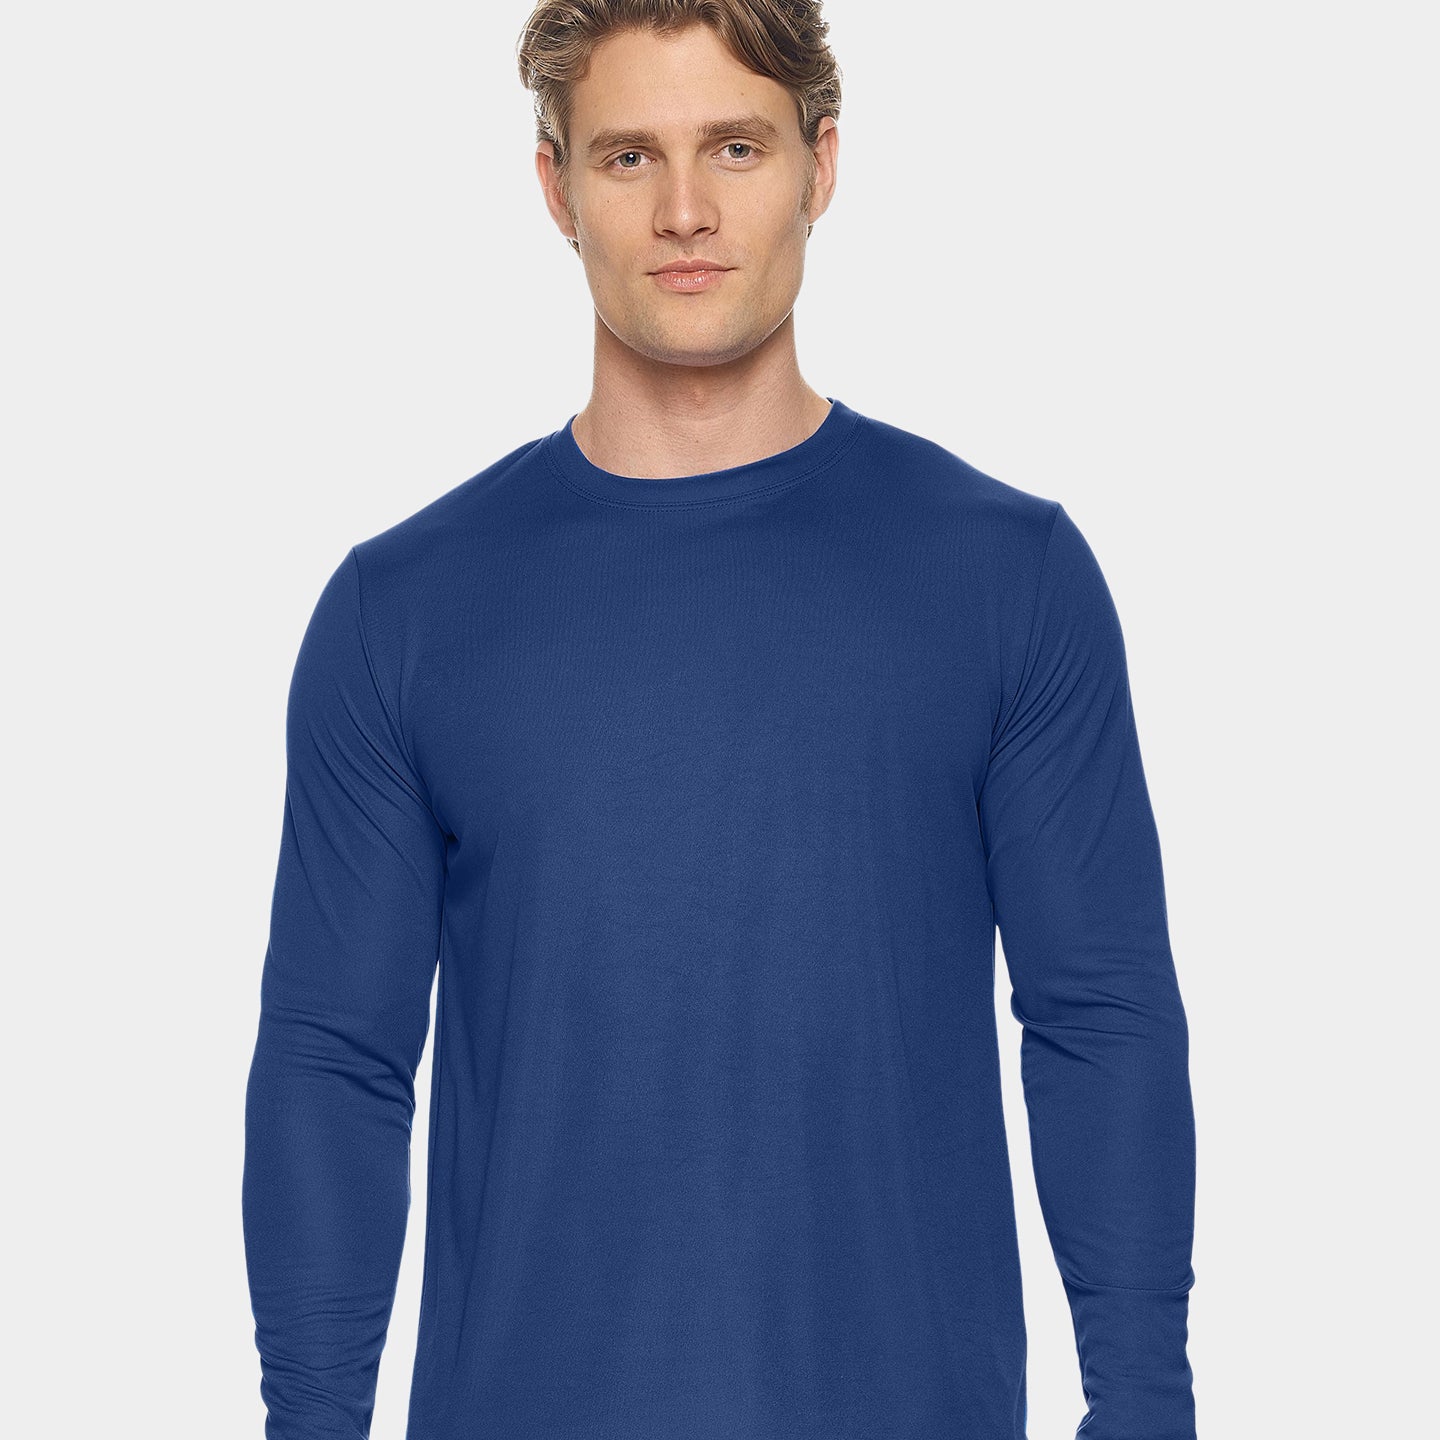 Expert Brand DriMax Men's Performance Long Sleeve Shirt, 2XL, Navy A1